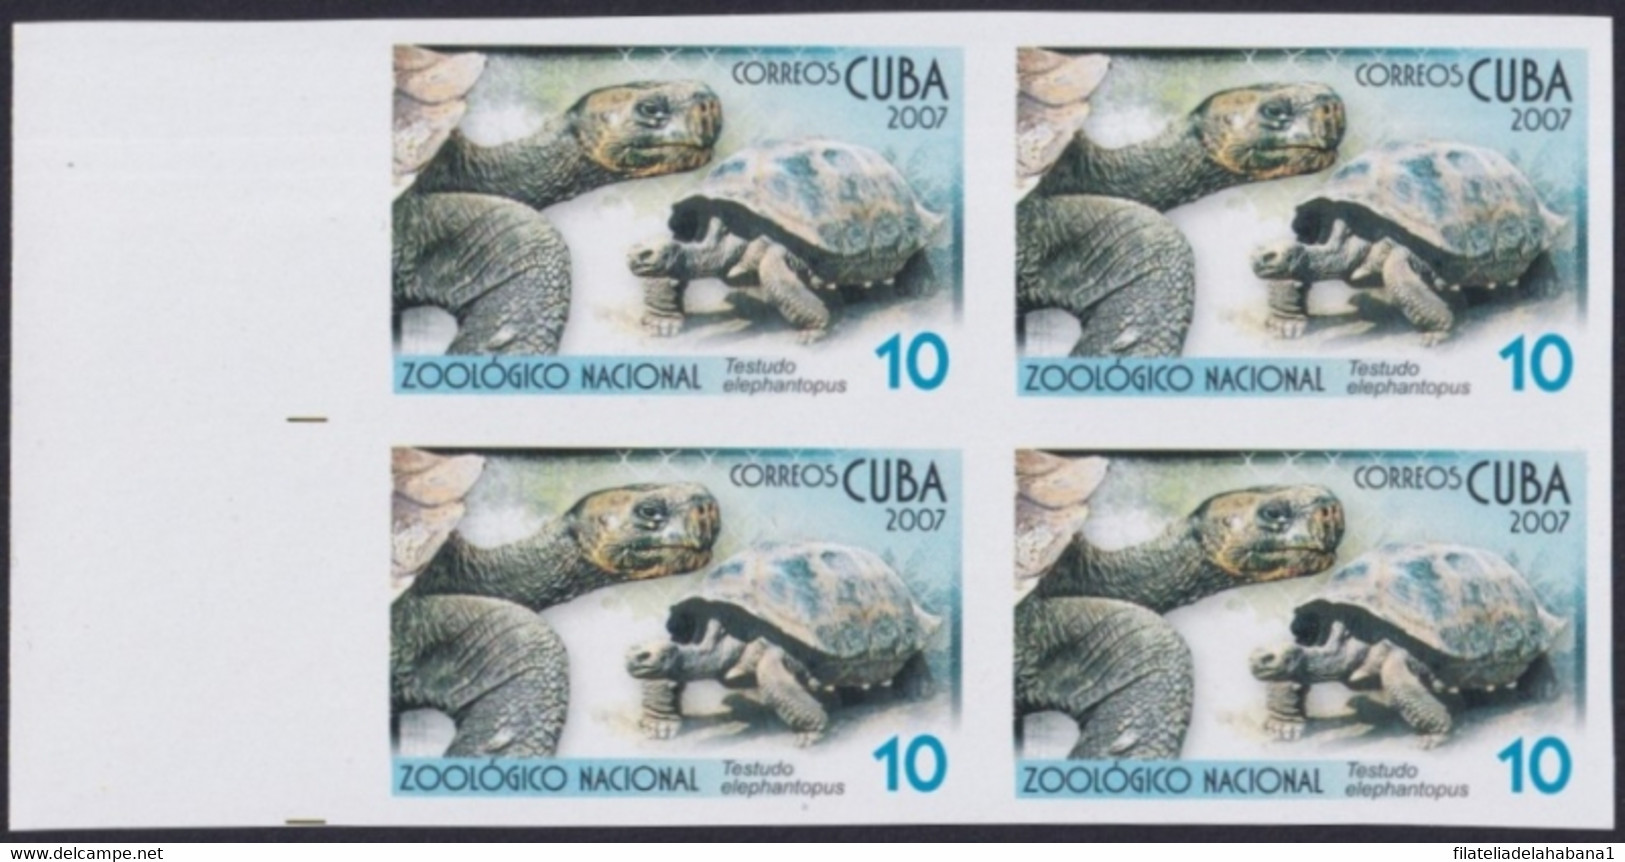 2007.710 CUBA 2007 2.05$ MNH IMPERFORATED PROOF VIRGEN KEY FAUNA ZOO TURTLE TORTUGA. - Sin Dentar, Pruebas De Impresión Y Variedades